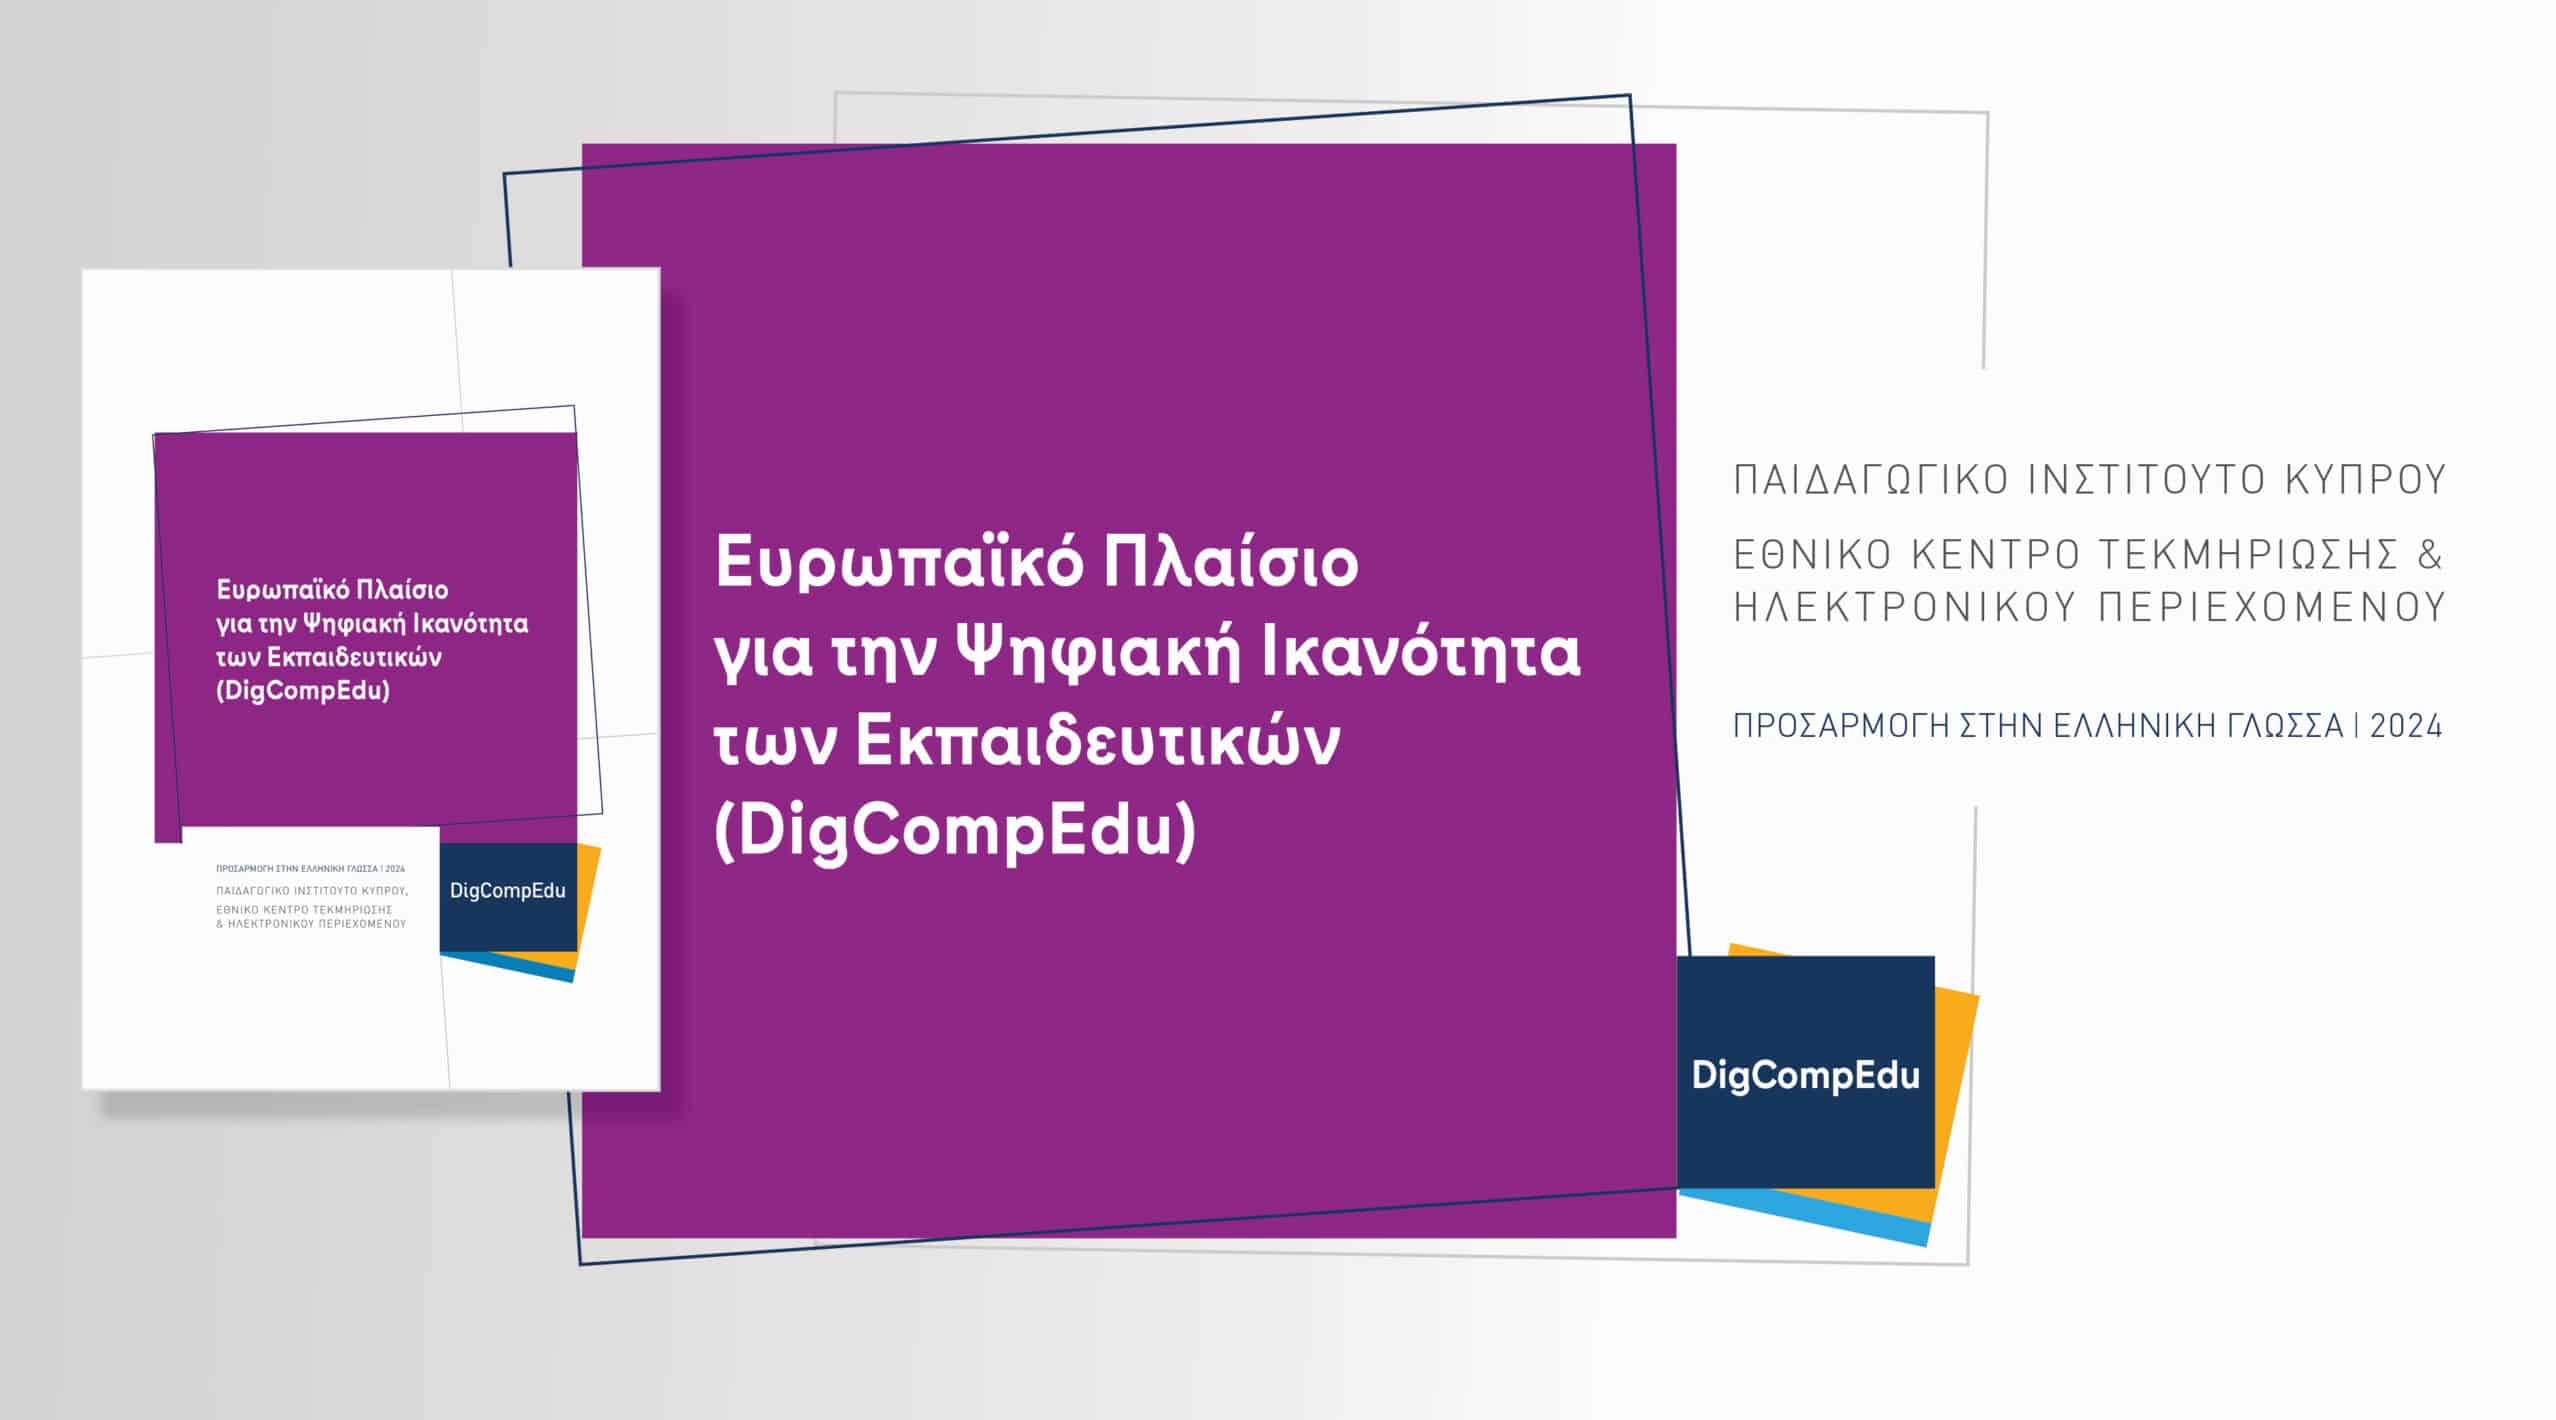 Το Ευρωπαϊκό Πλαίσιο για την Ψηφιακή Ικανότητα των Εκπαιδευτικών (DigCompΕdu)